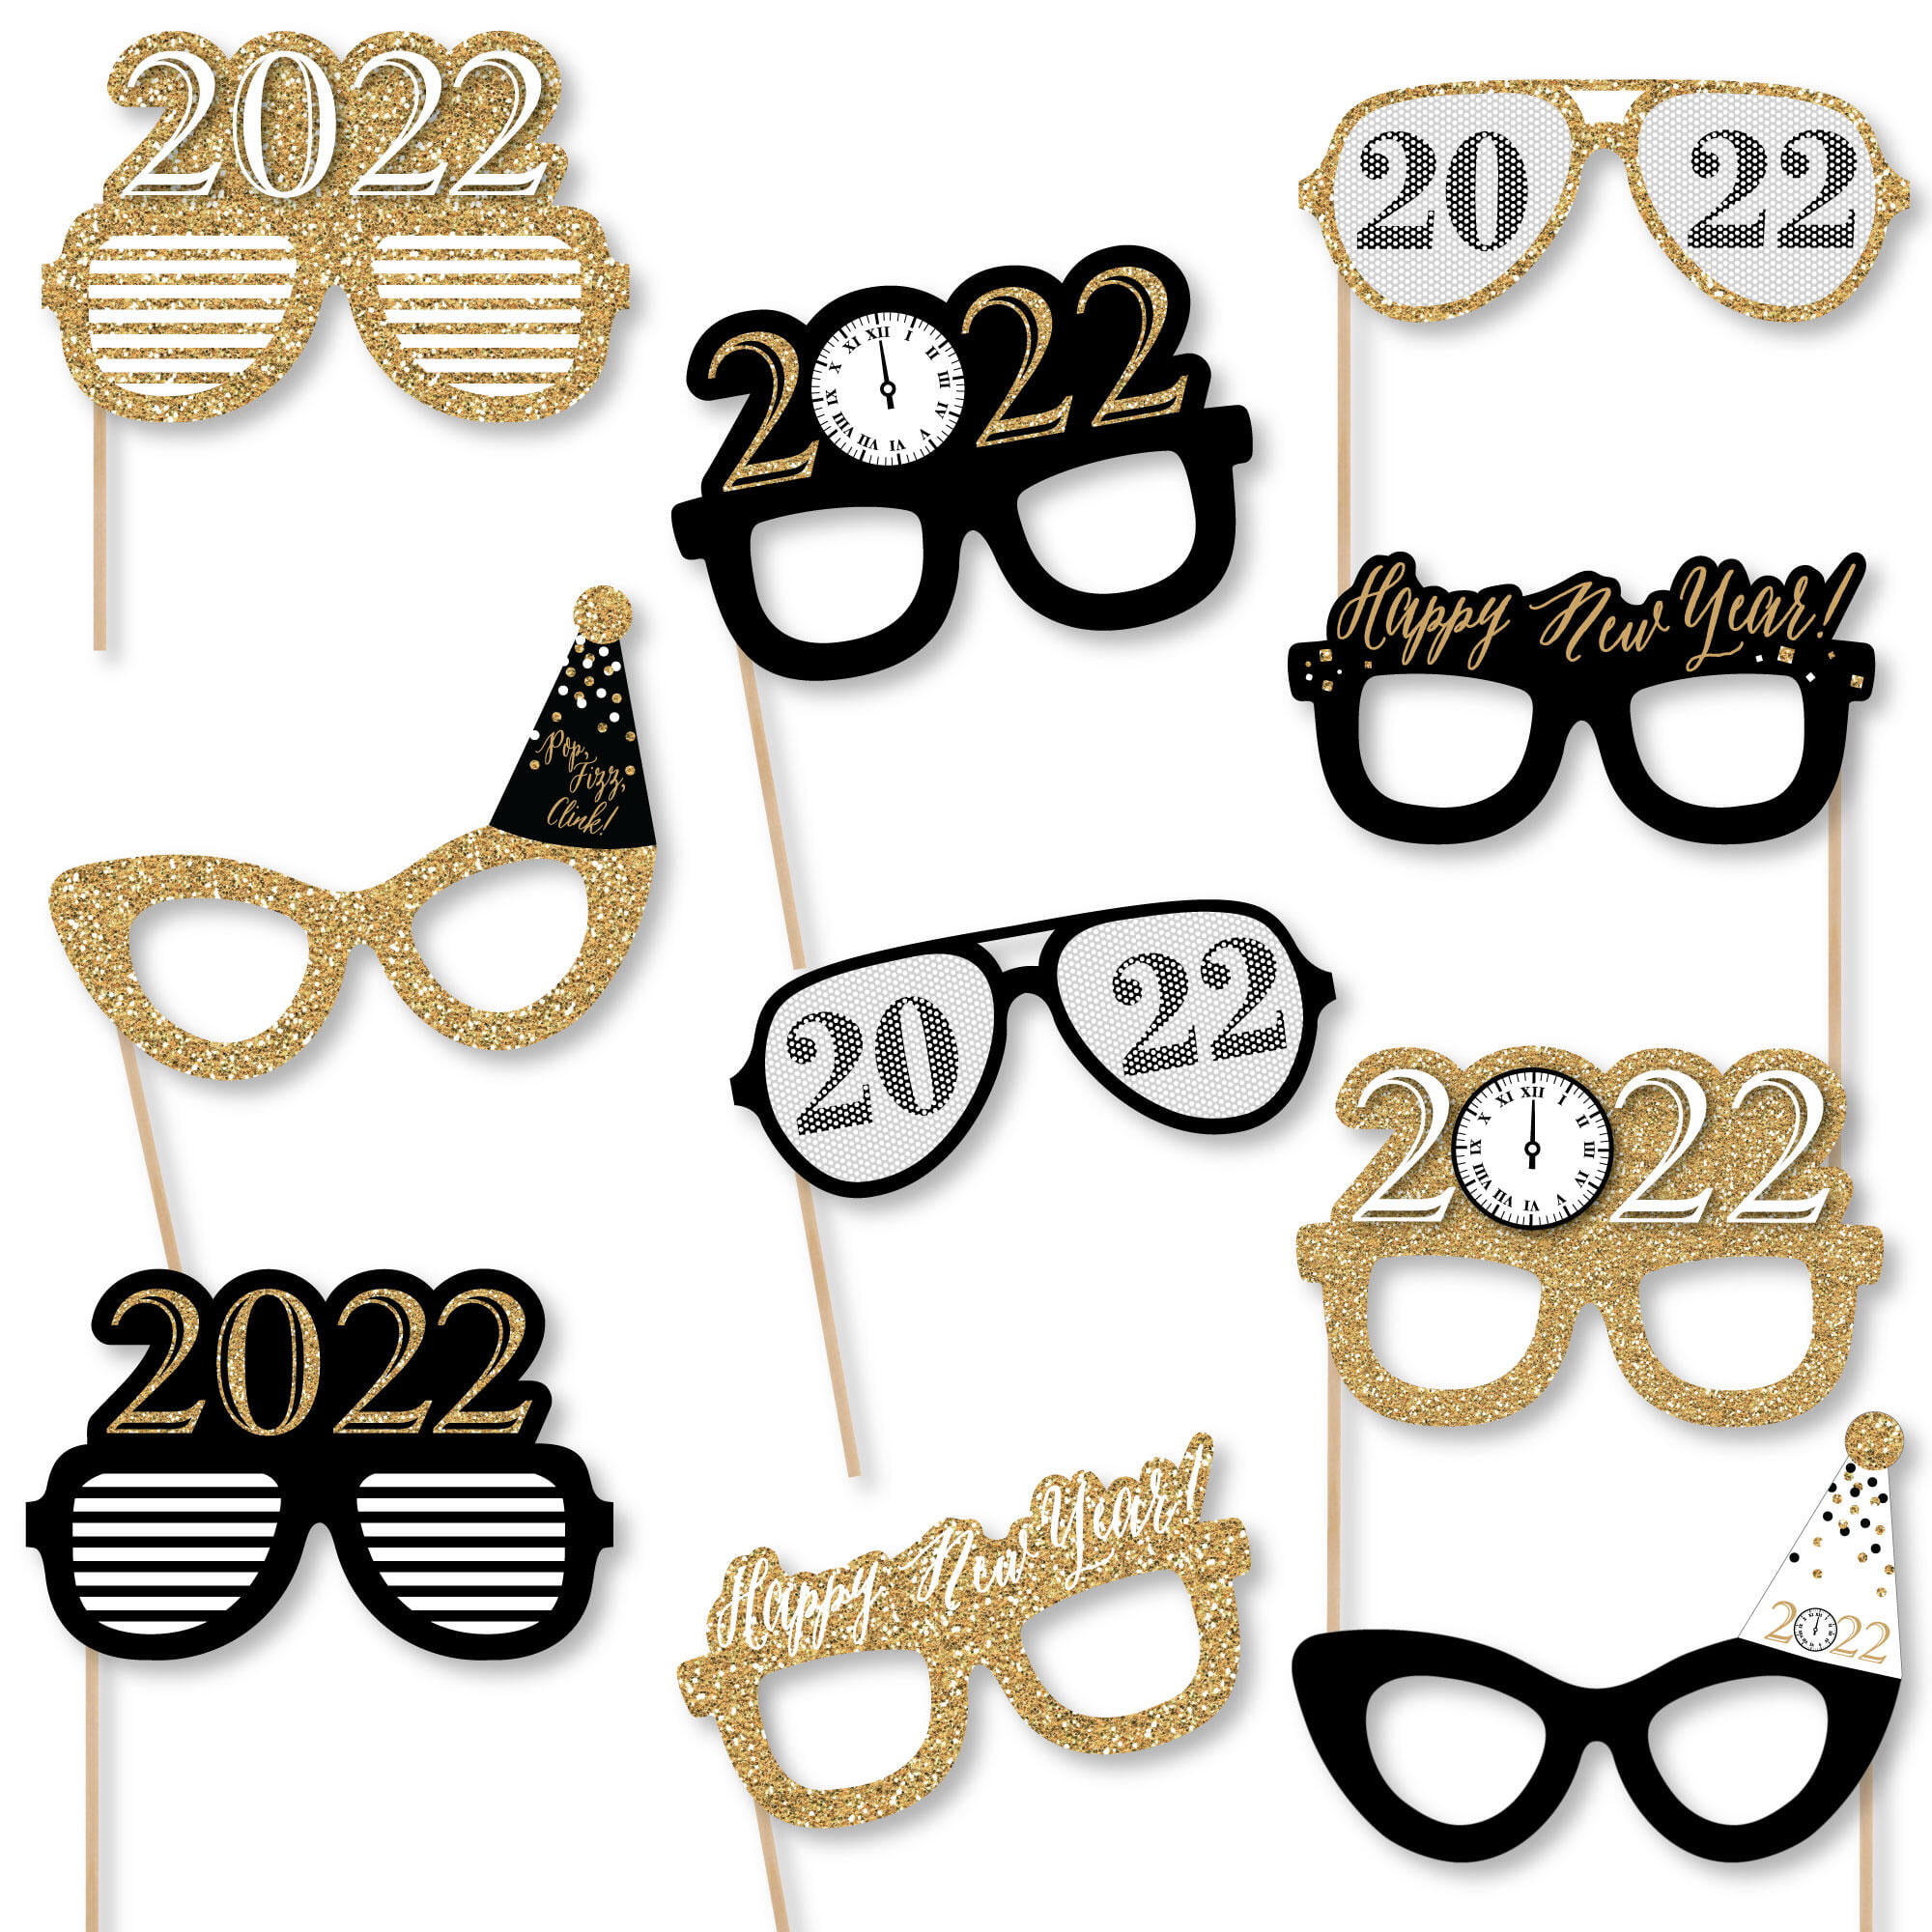 Paper Glasses 2021 Graduation Decoration Eve Party Photo Booth Decor T1P7 